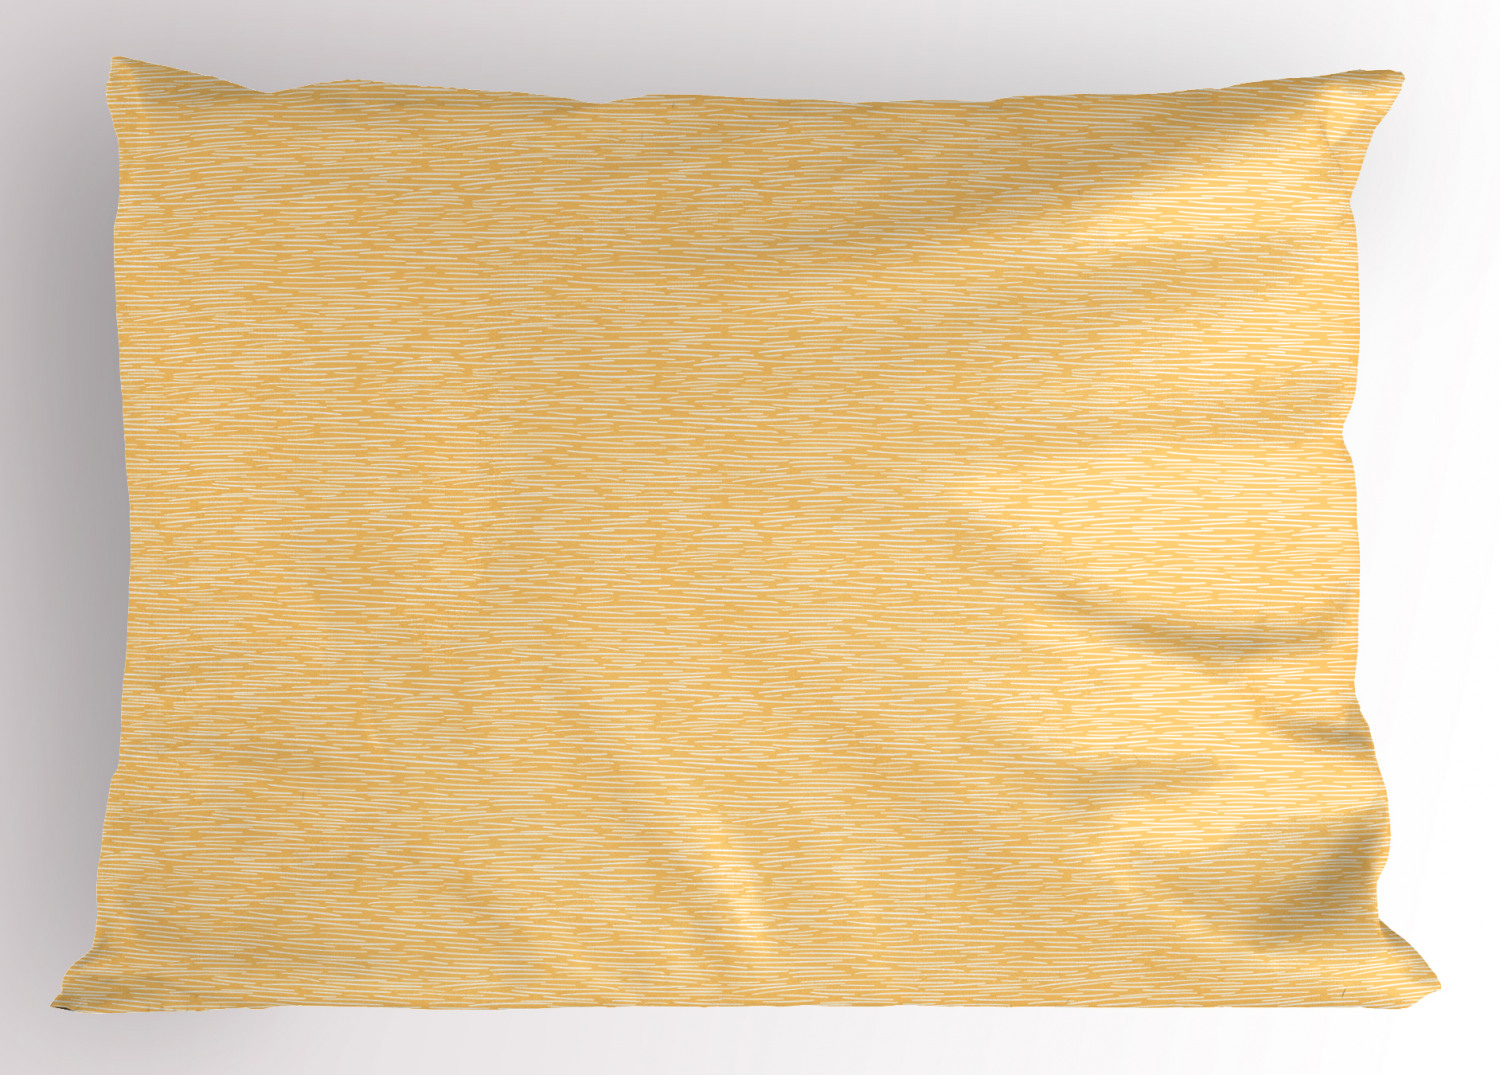 Details about   Feminine Waves Pillow Sham Decorative Pillowcase 3 Sizes Bedroom Decoration 